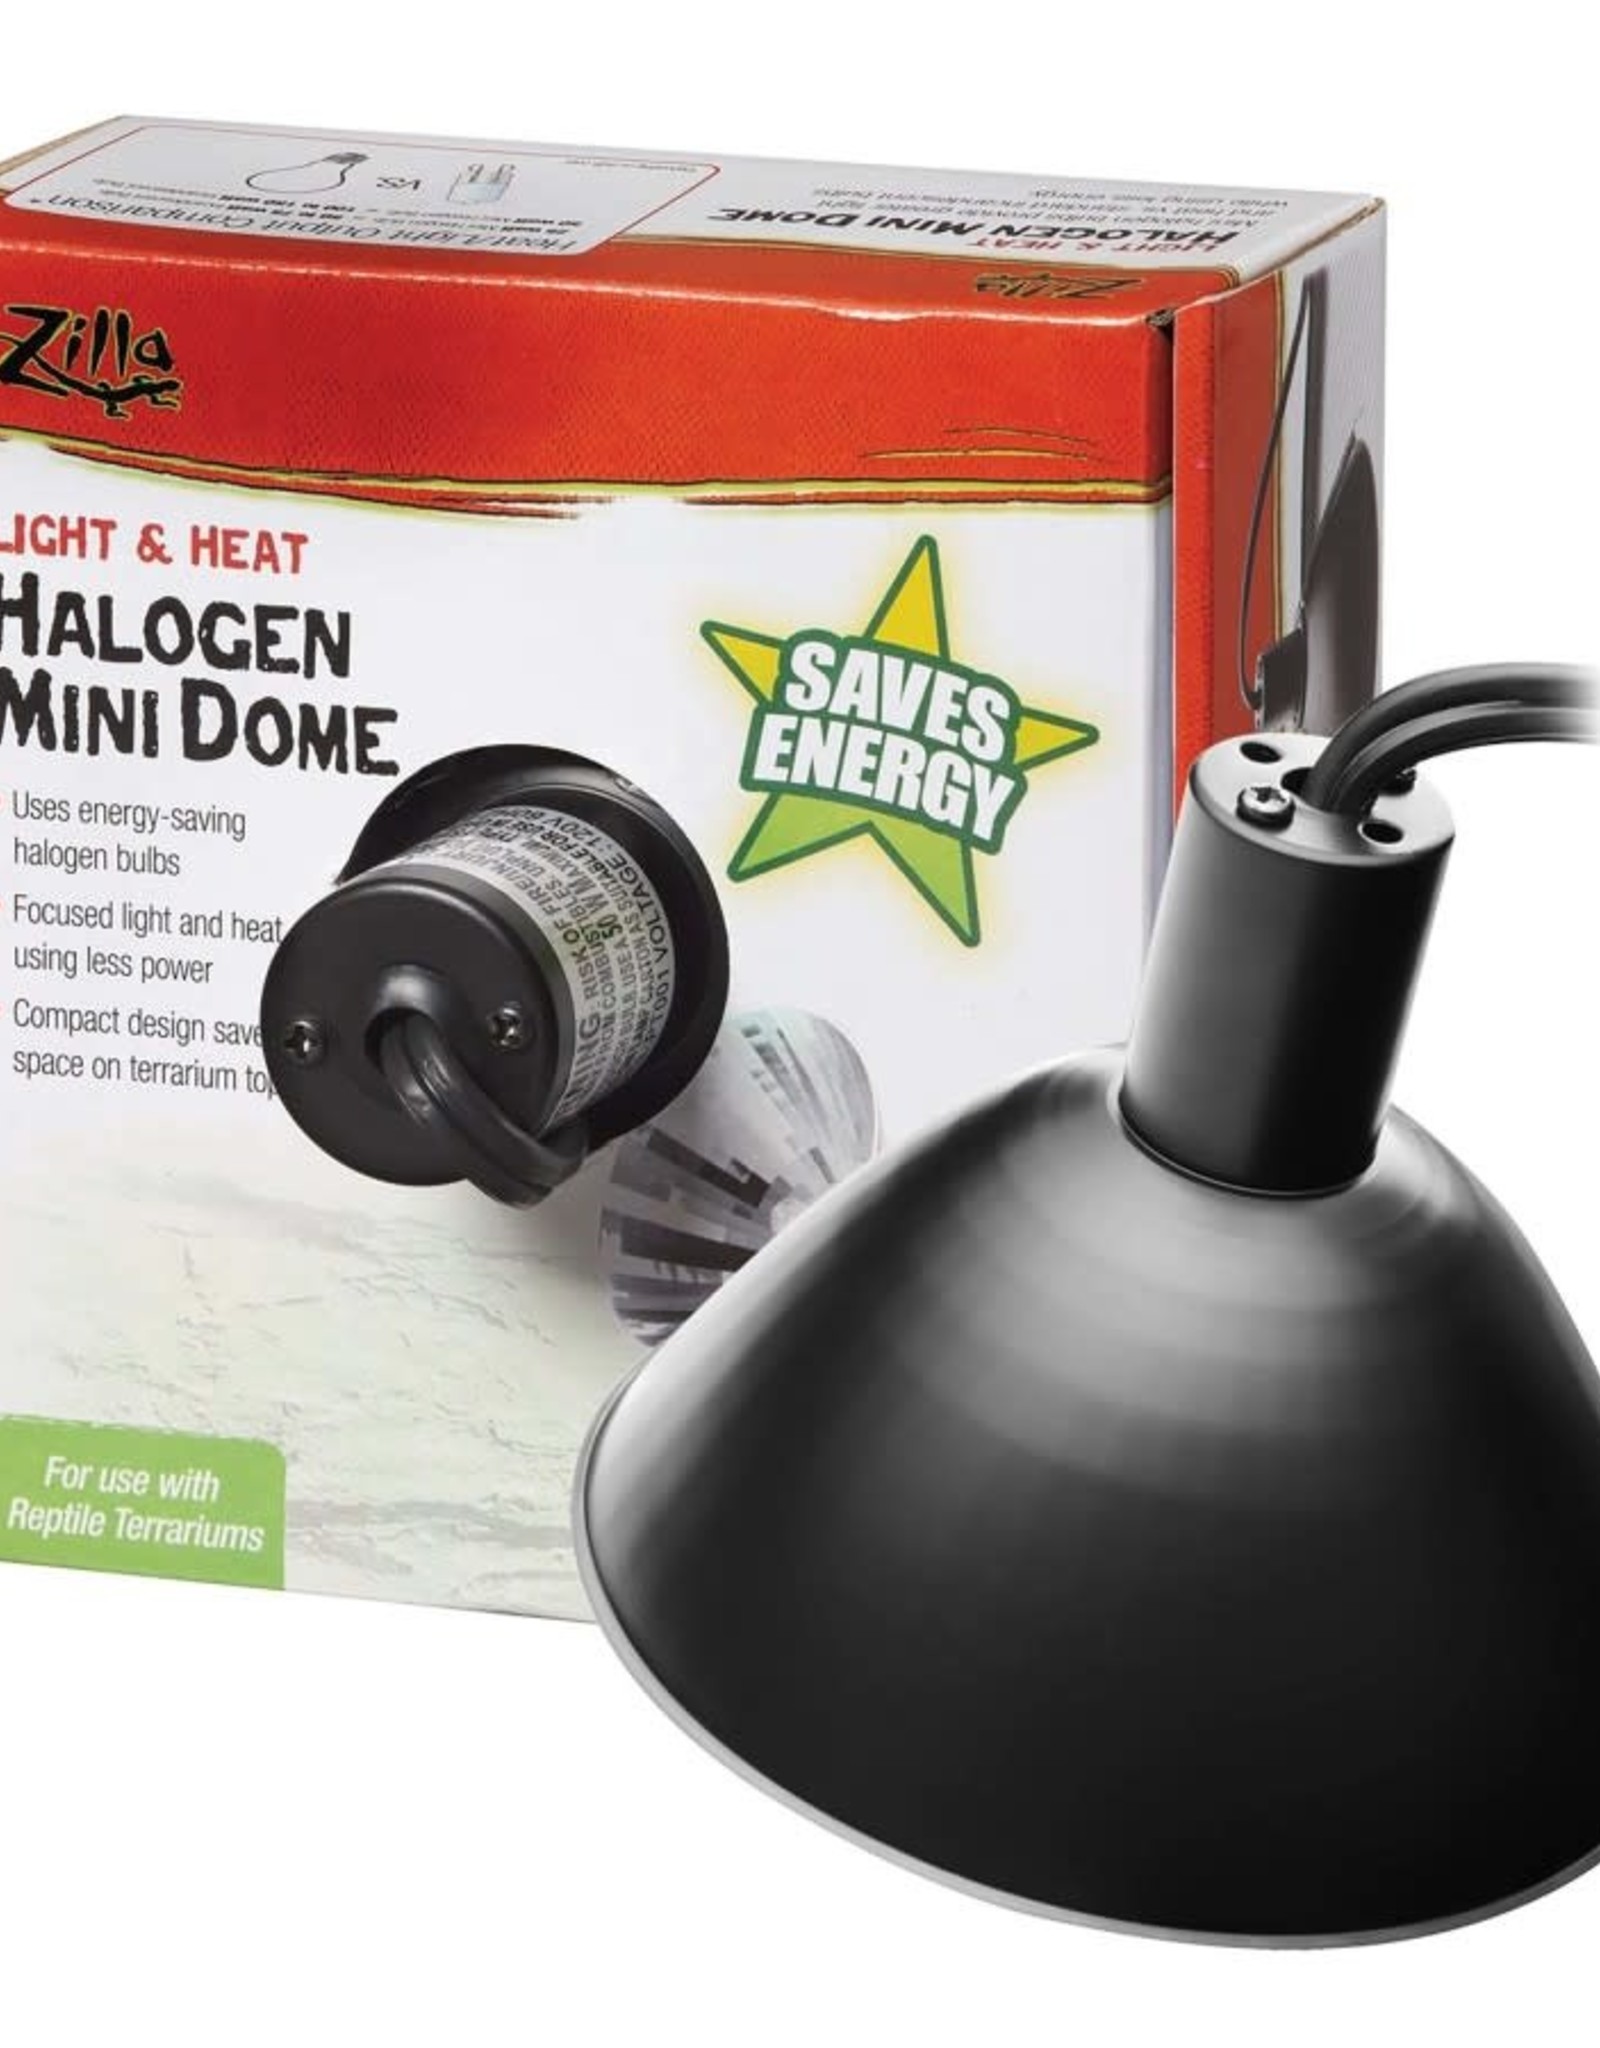 ZILLA Zilla Light & Heat Halogen Mini Dome For Reptile Terrariums